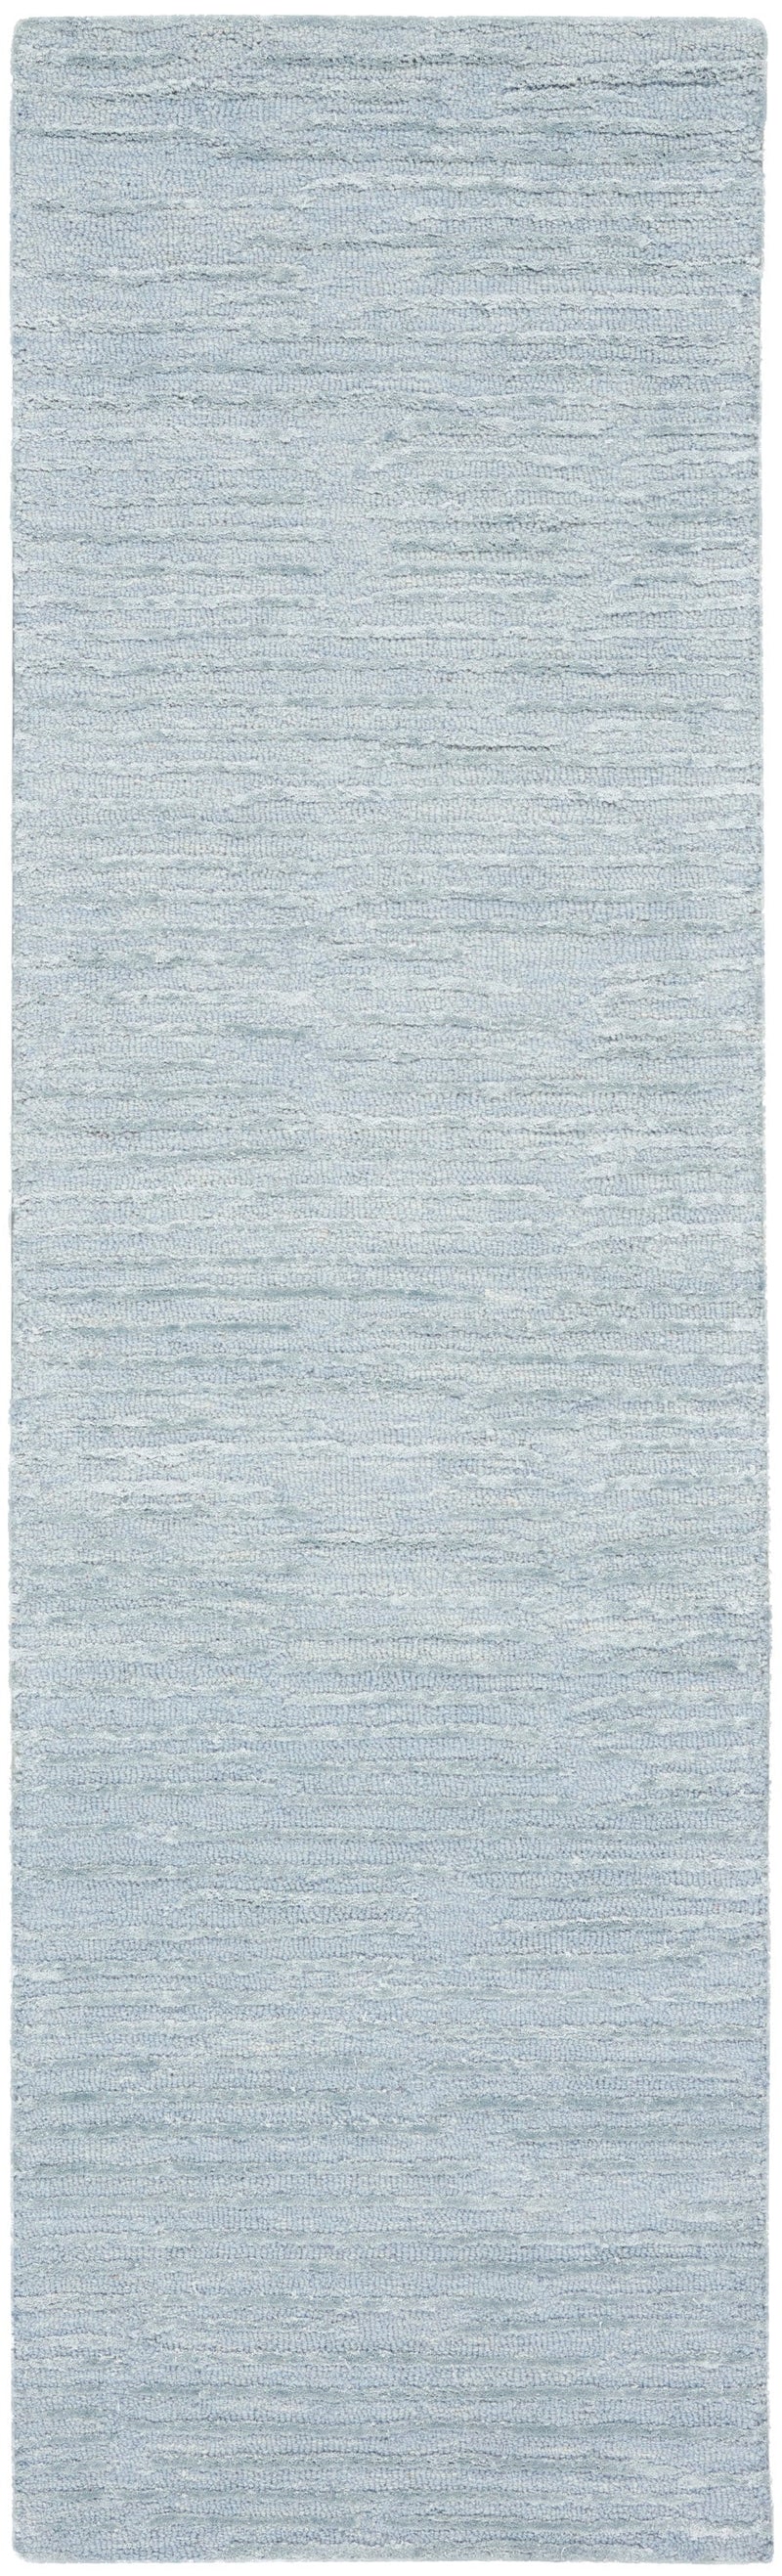 media image for ck010 linear handmade light blue rug by nourison 99446879950 redo 2 25